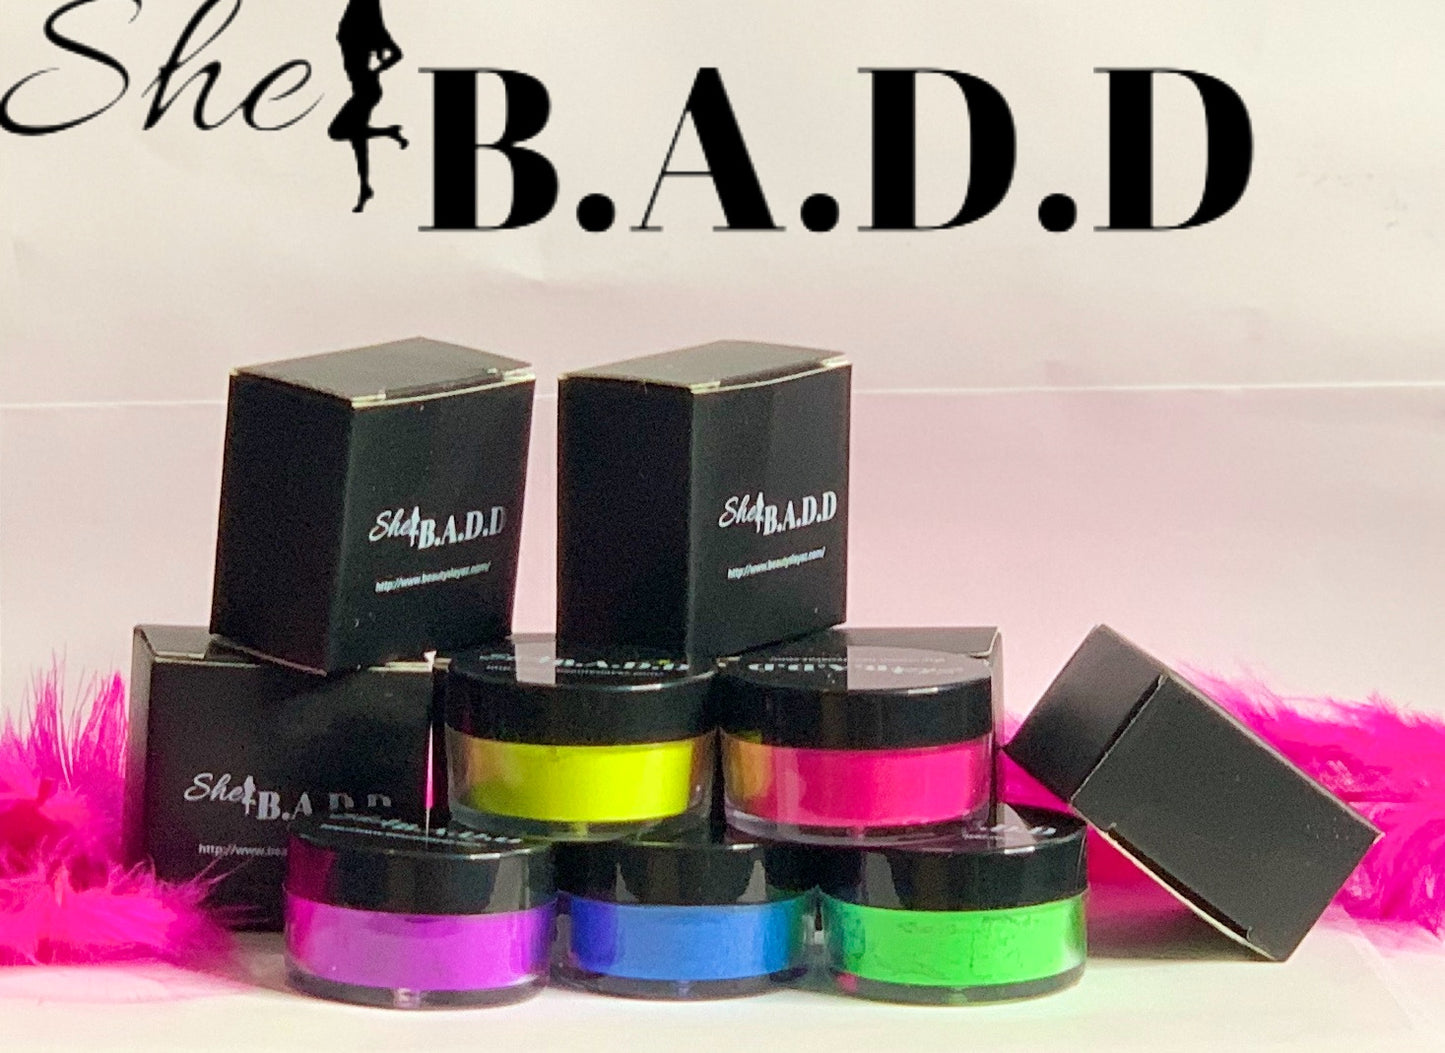 She B.A.D.D Pigment Bundle